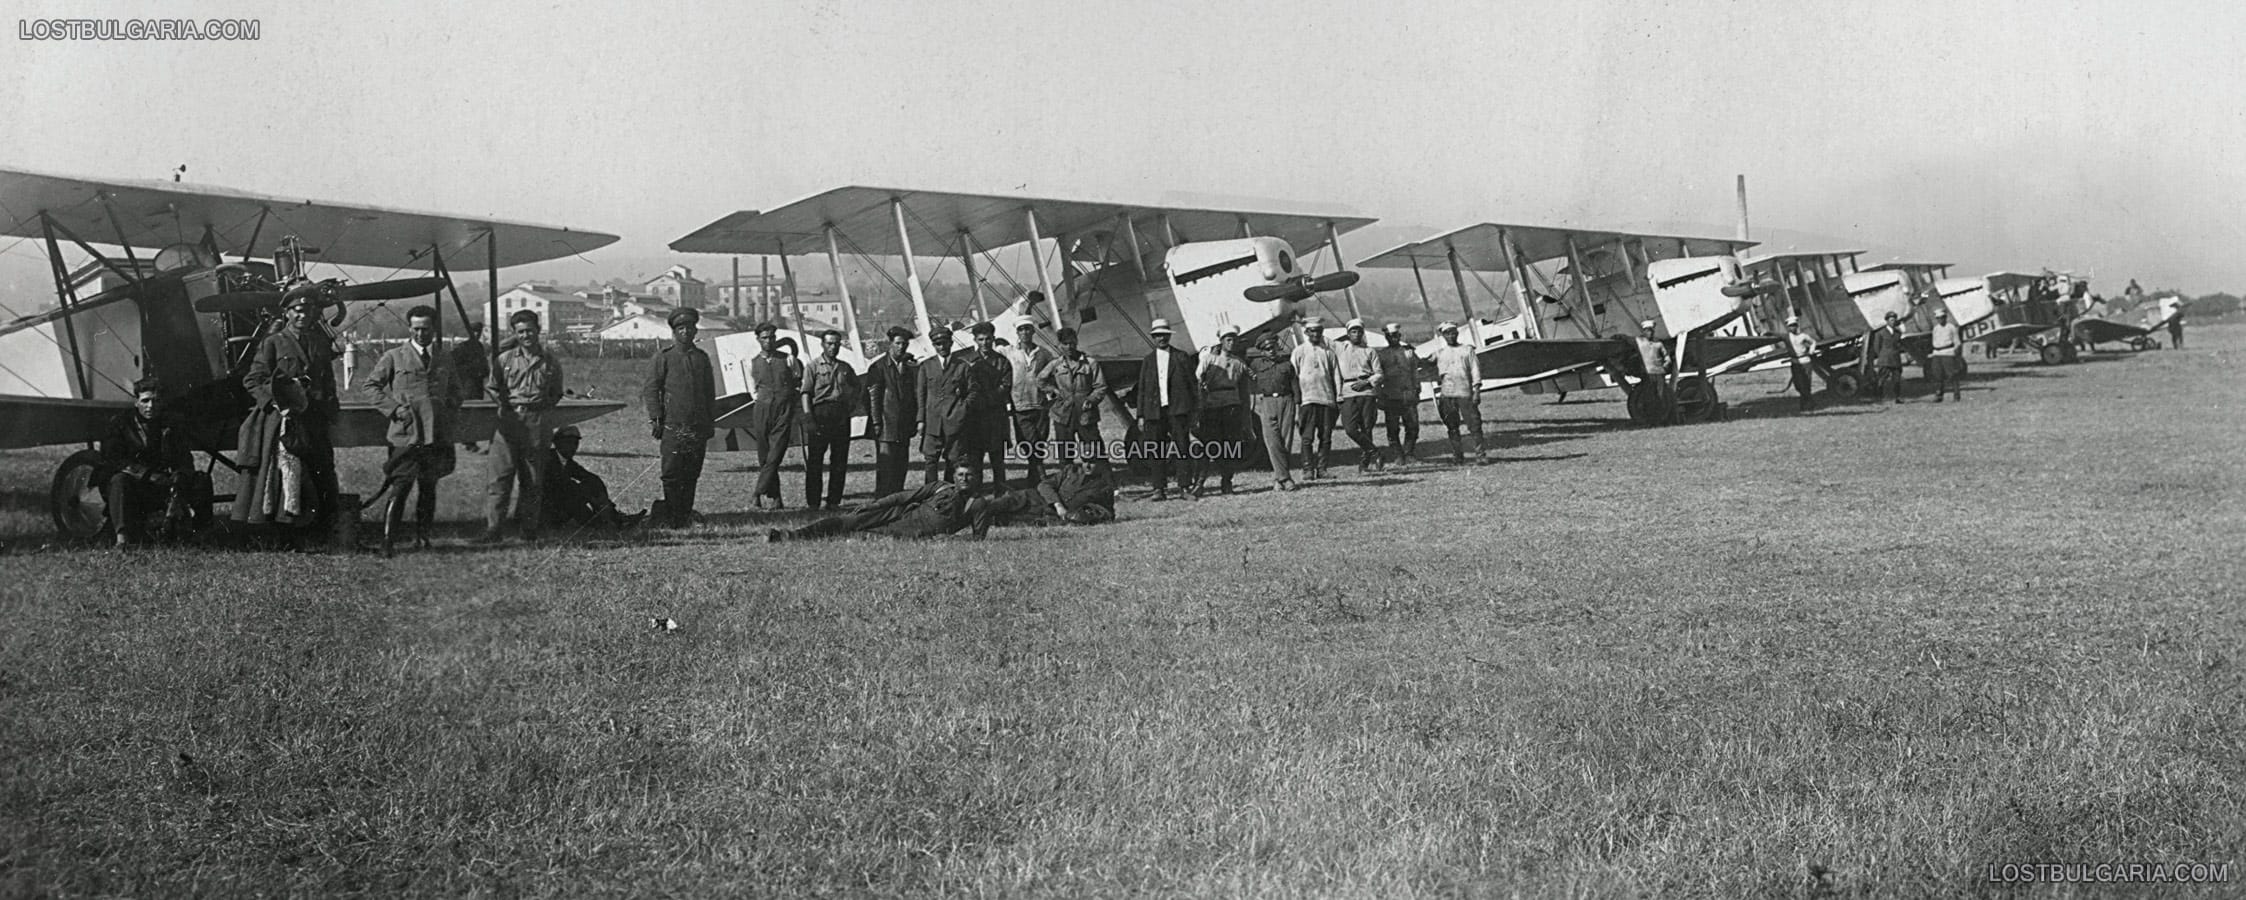 Авиатори и летищен персонал пред самолети Потез 17 (Potez XVII - произвеждан в Полша по френски лиценз за българската авиация) на летище Божурище, 1928 г.